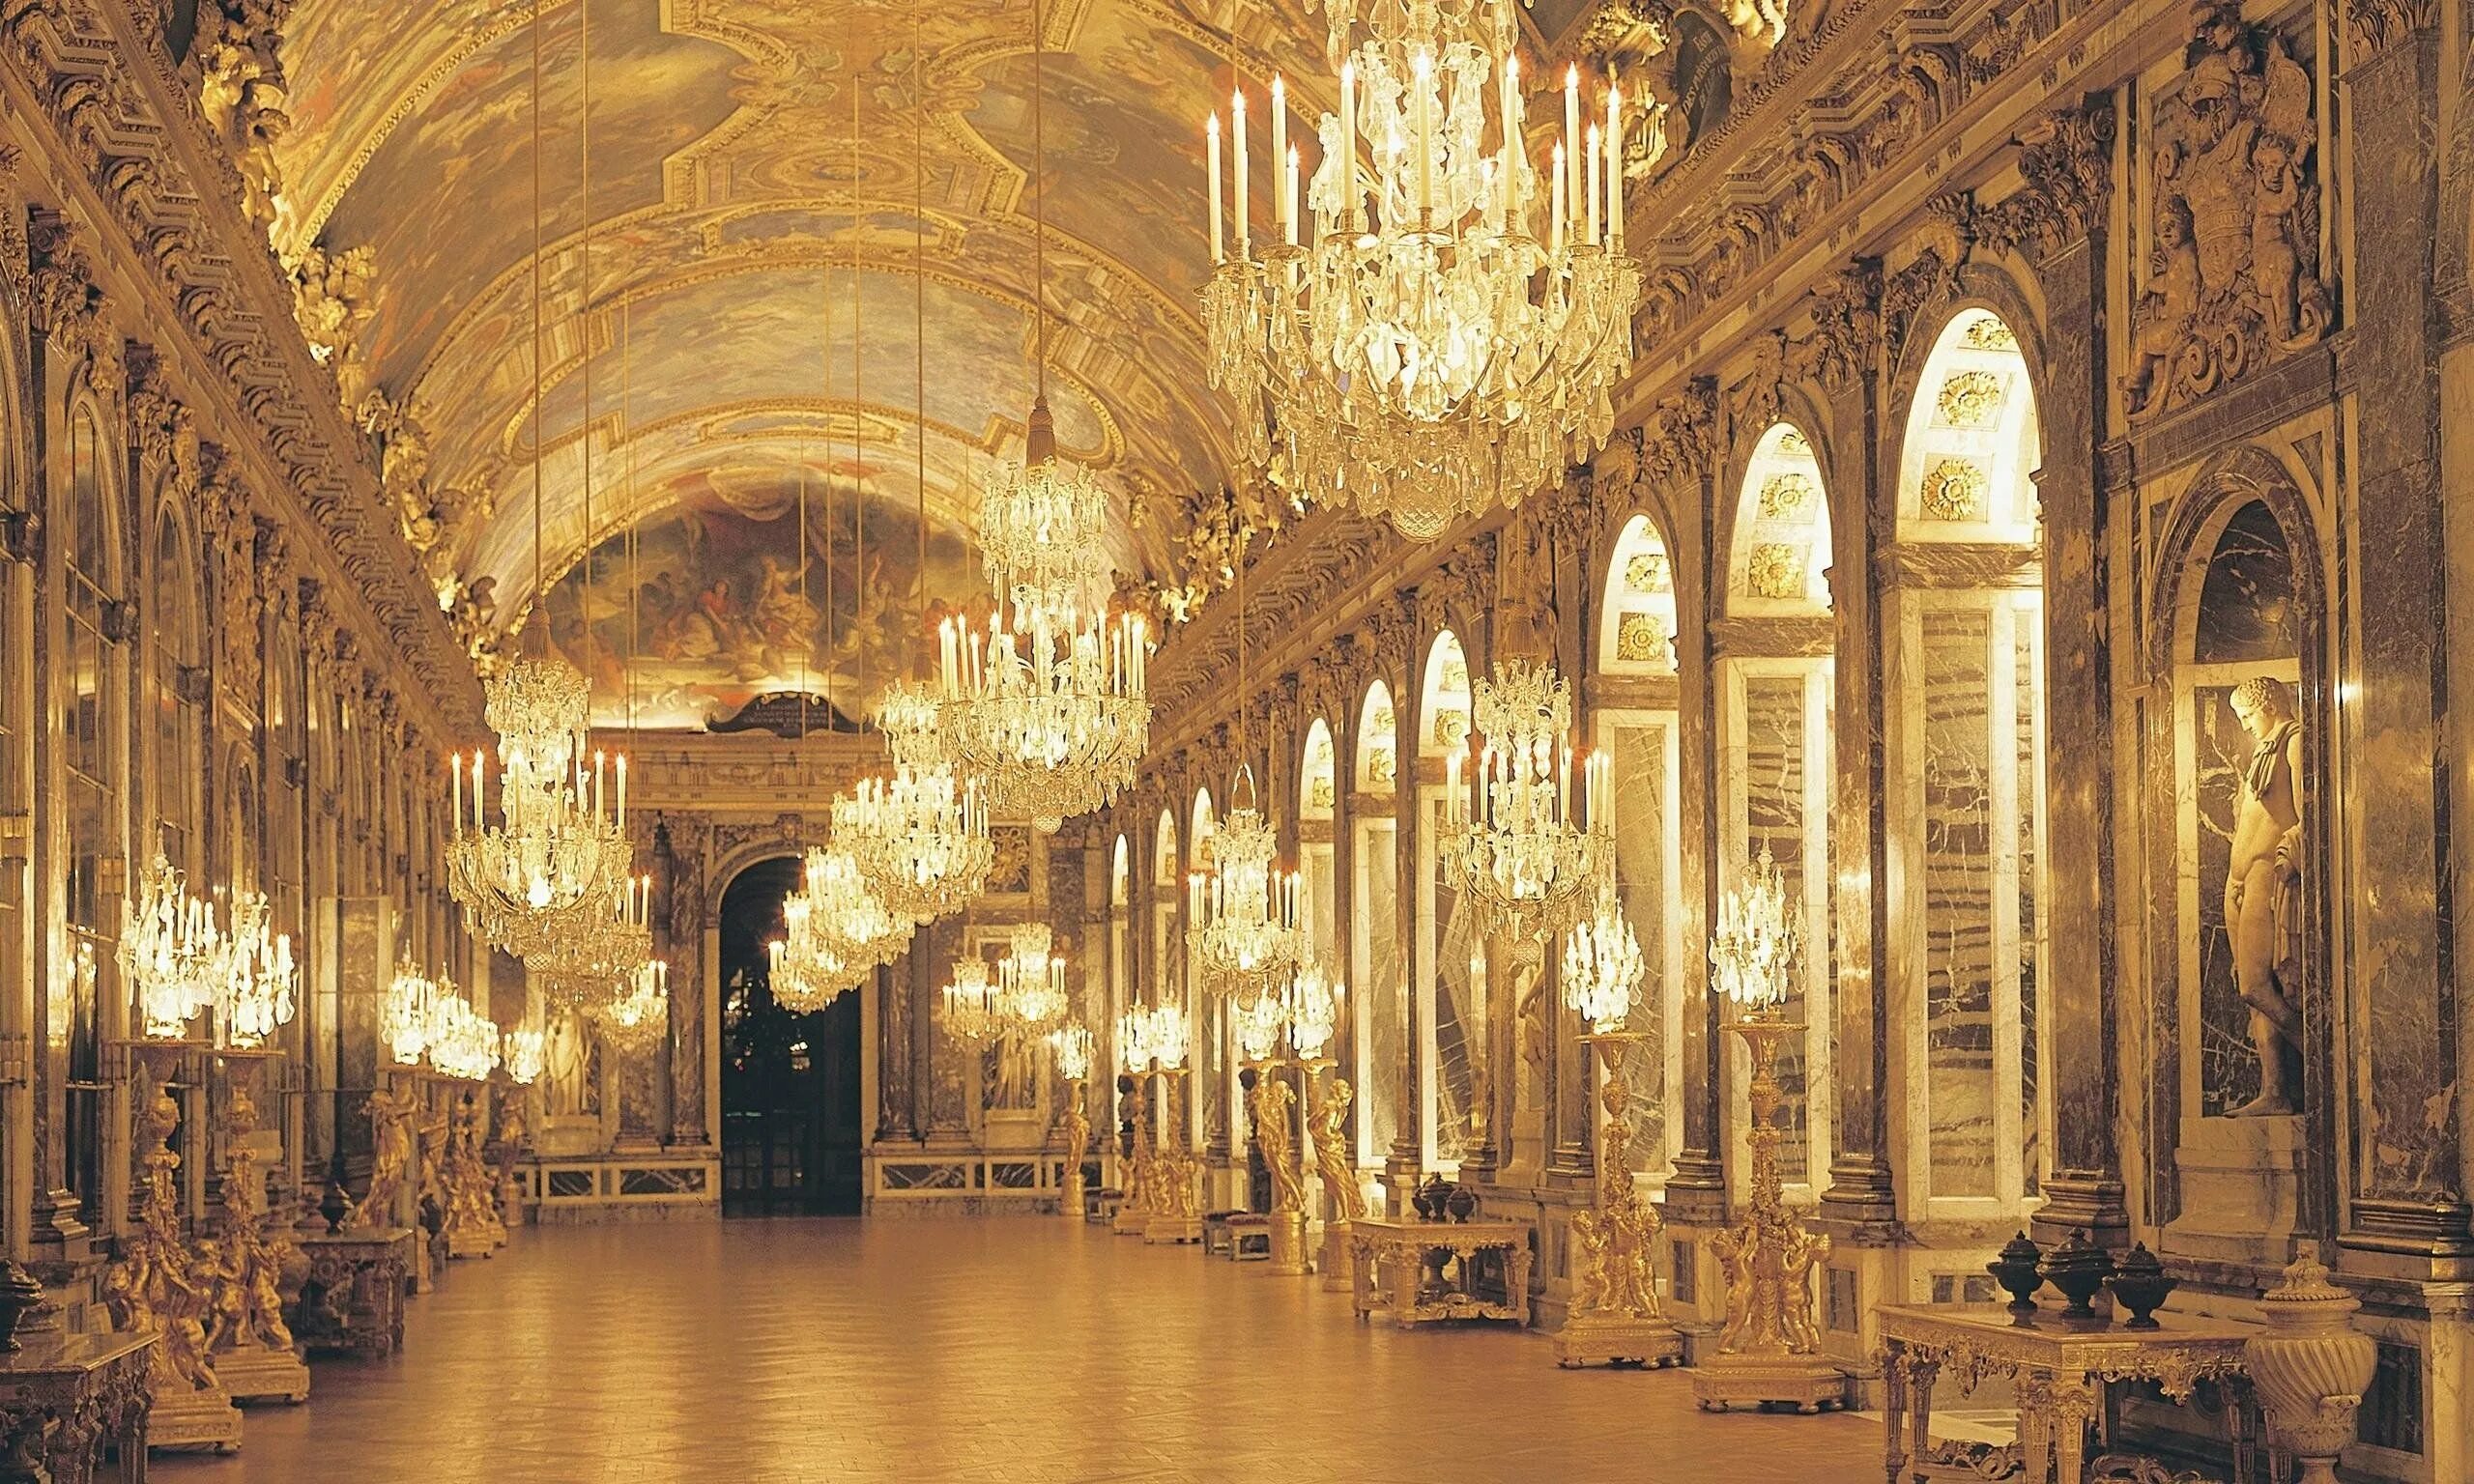 Королевское госп. Версальский дворец бальный зал. Шато де Версаль, Франция. Дворец Версаль Франция внутри. Королевская часовня Версальского дворца.